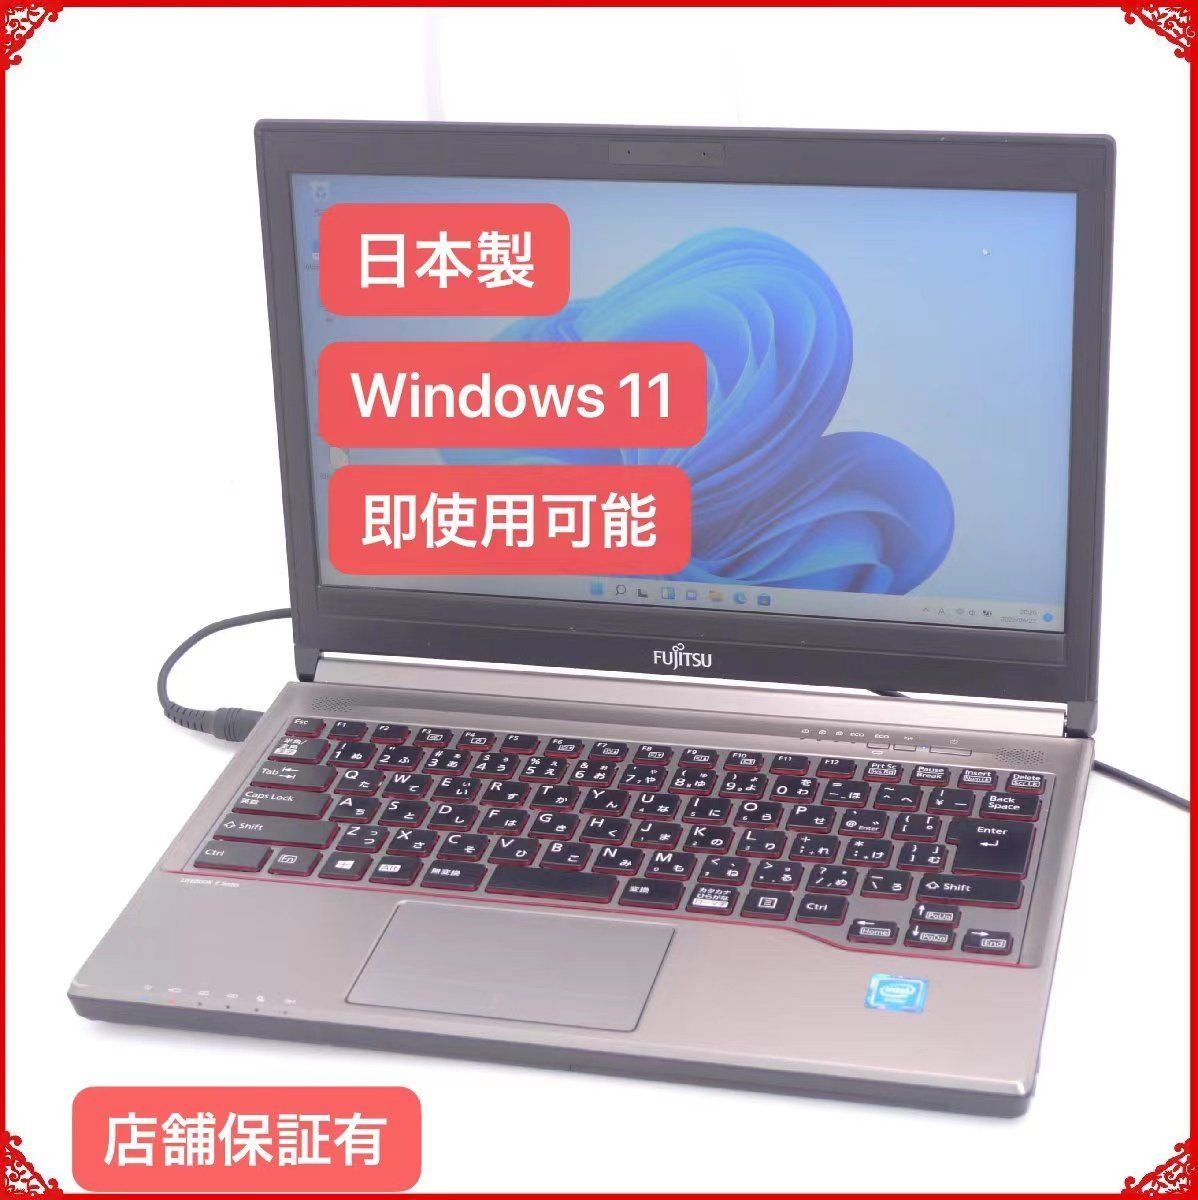 人気Windows11 ノートPC 富士通 E736/M 8GB DVD 無線